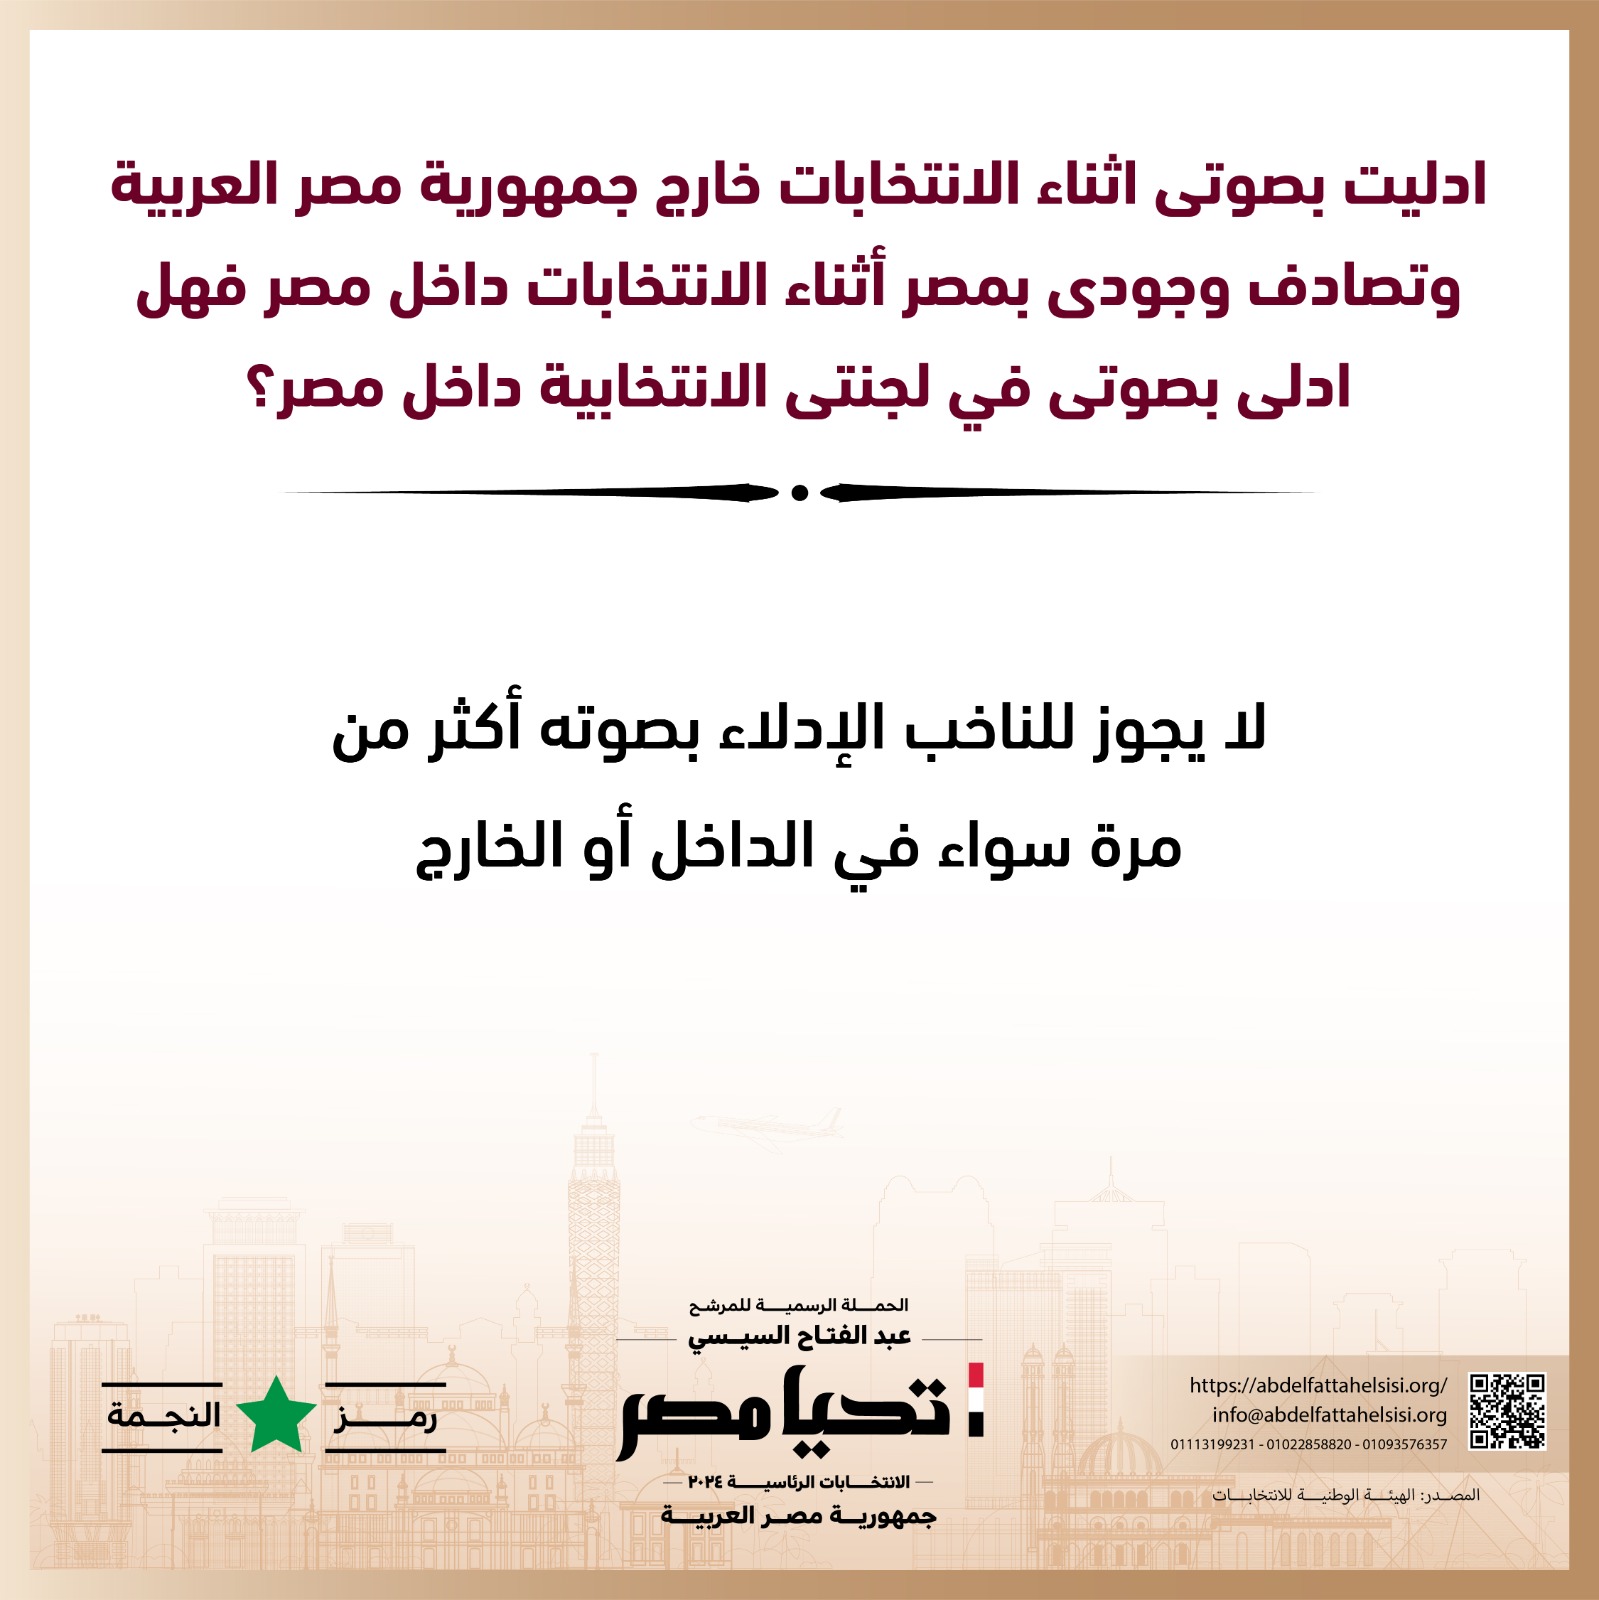 الحملة الرسمية للمرشح عبد الفتاح السيسي  (6)